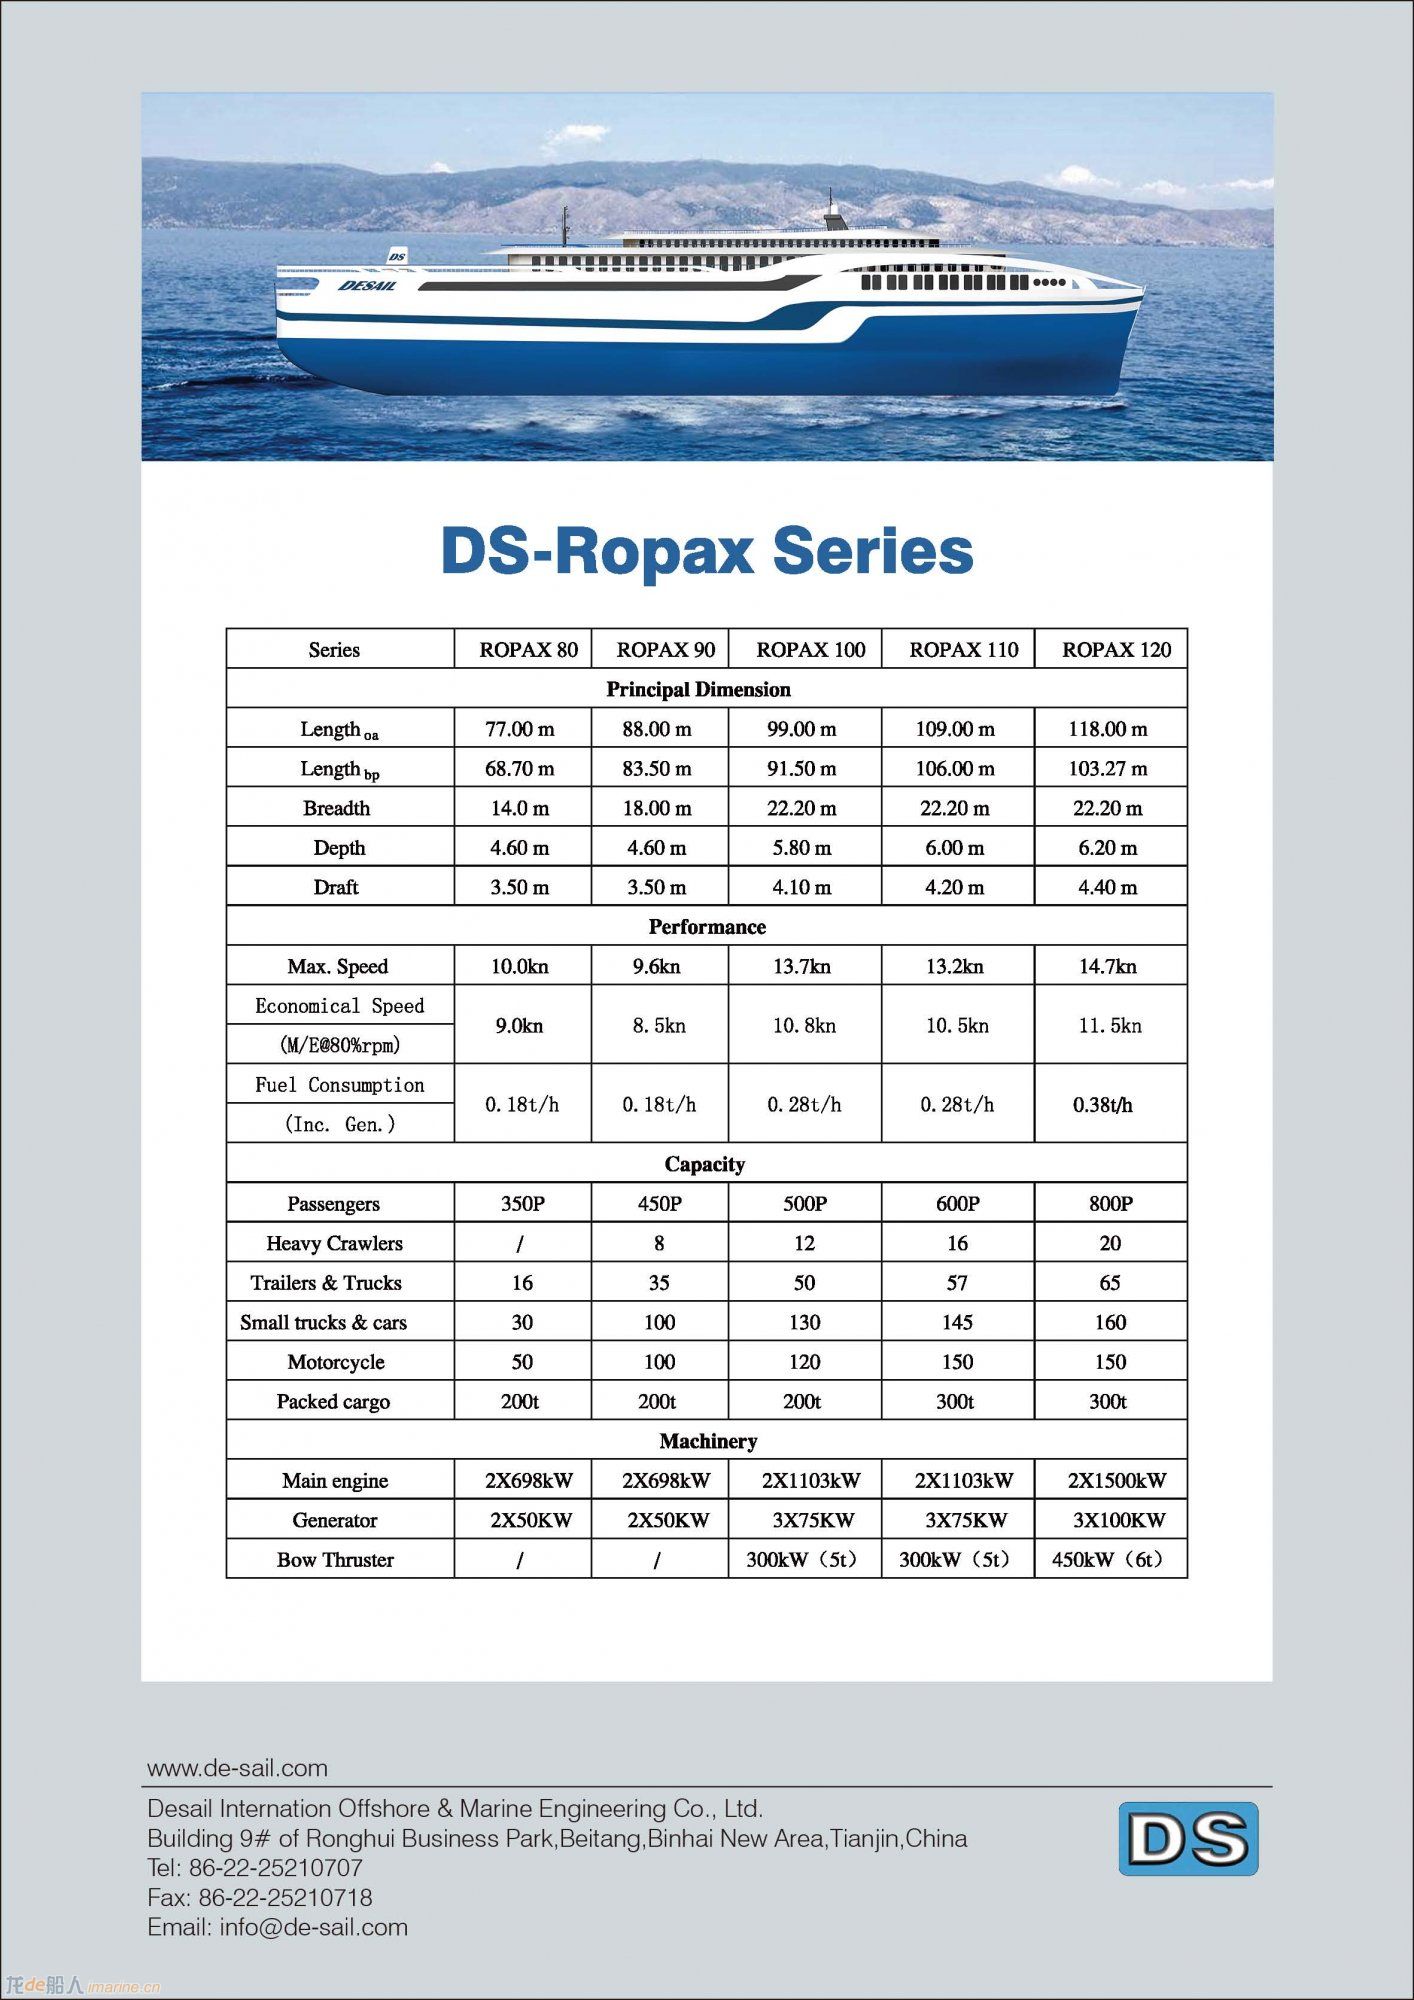 DS-Ropax Series.jpg